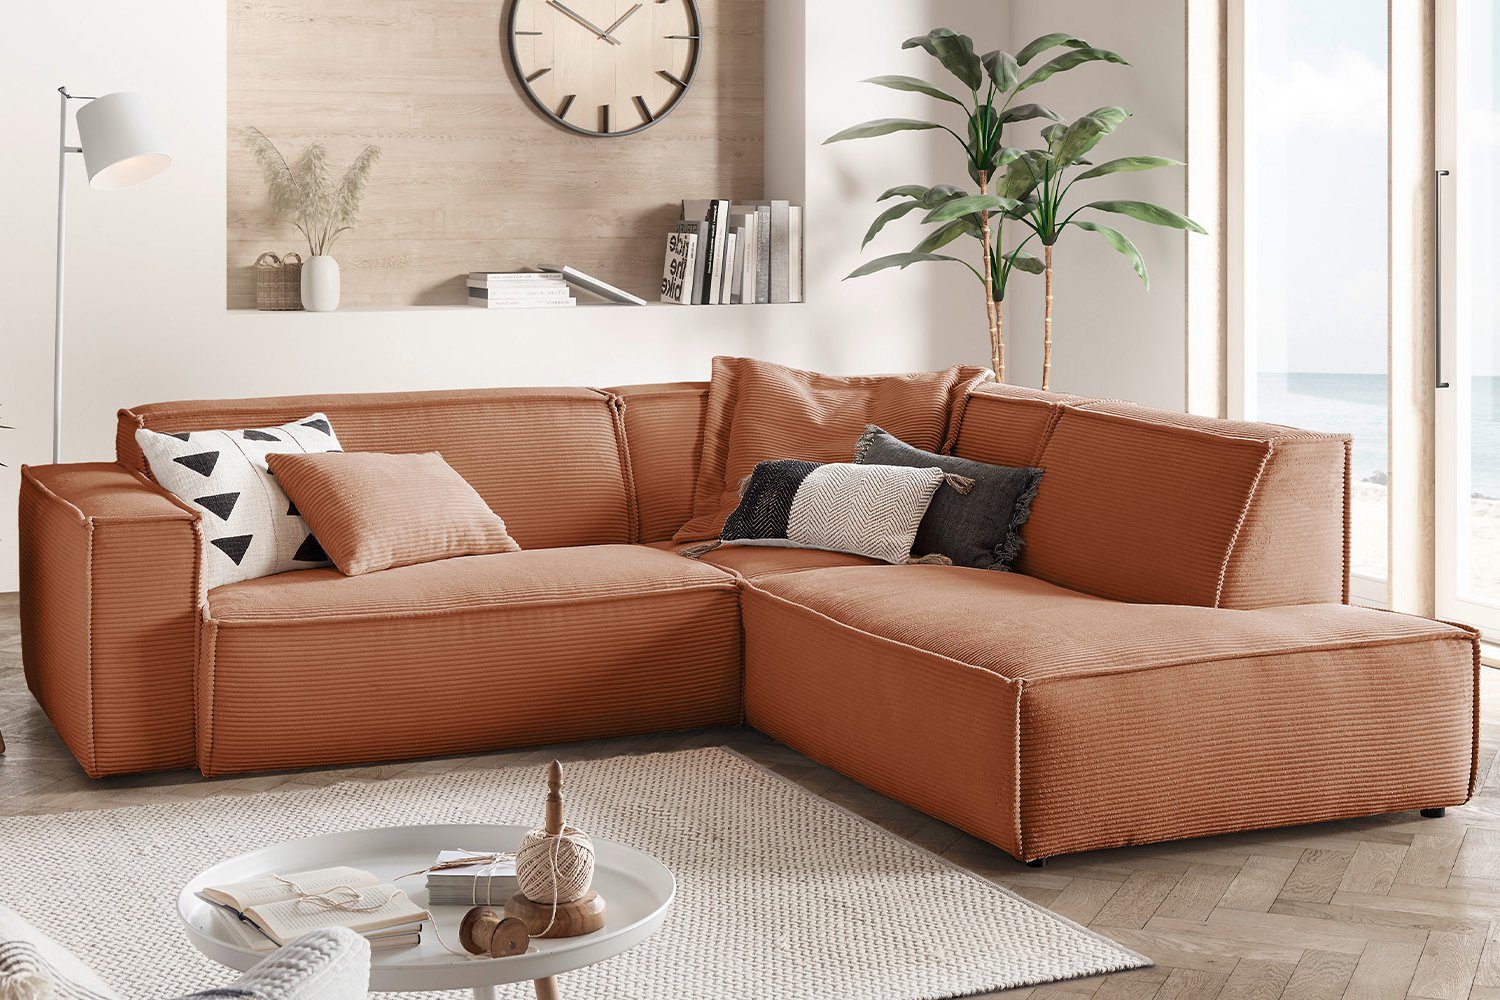 Sofa links, od. rechts SAMU, Farben Ecksofa Recamiere rost Cord, KAWOLA versch.